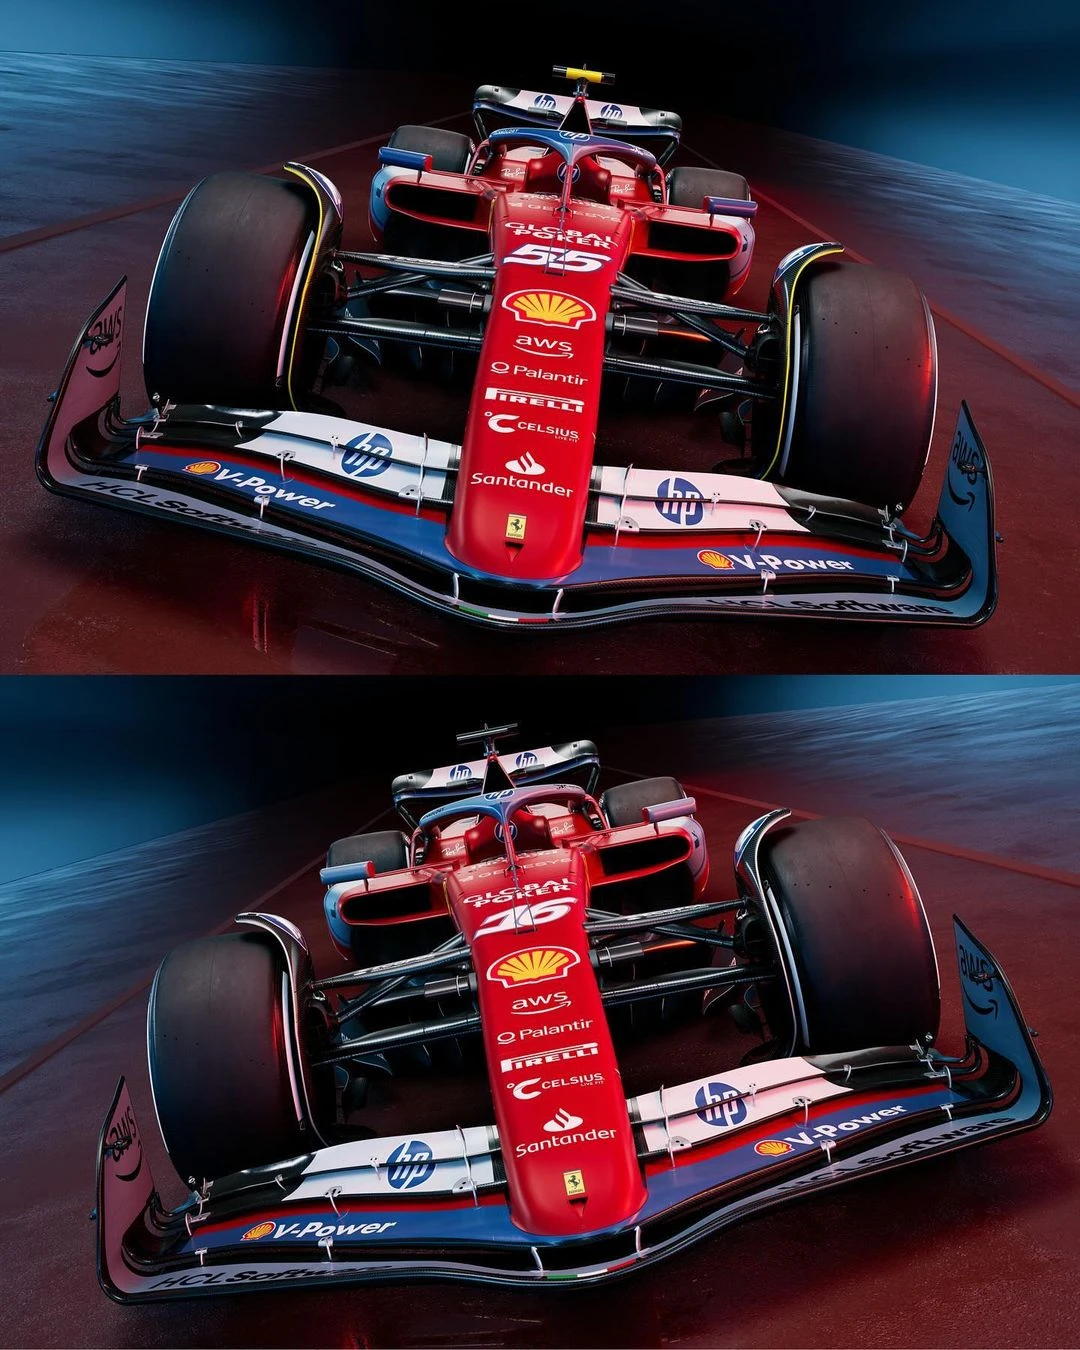 Ferrari'nin Miami GP'sinde kullanacağı özel renk düzeni gallery image 1